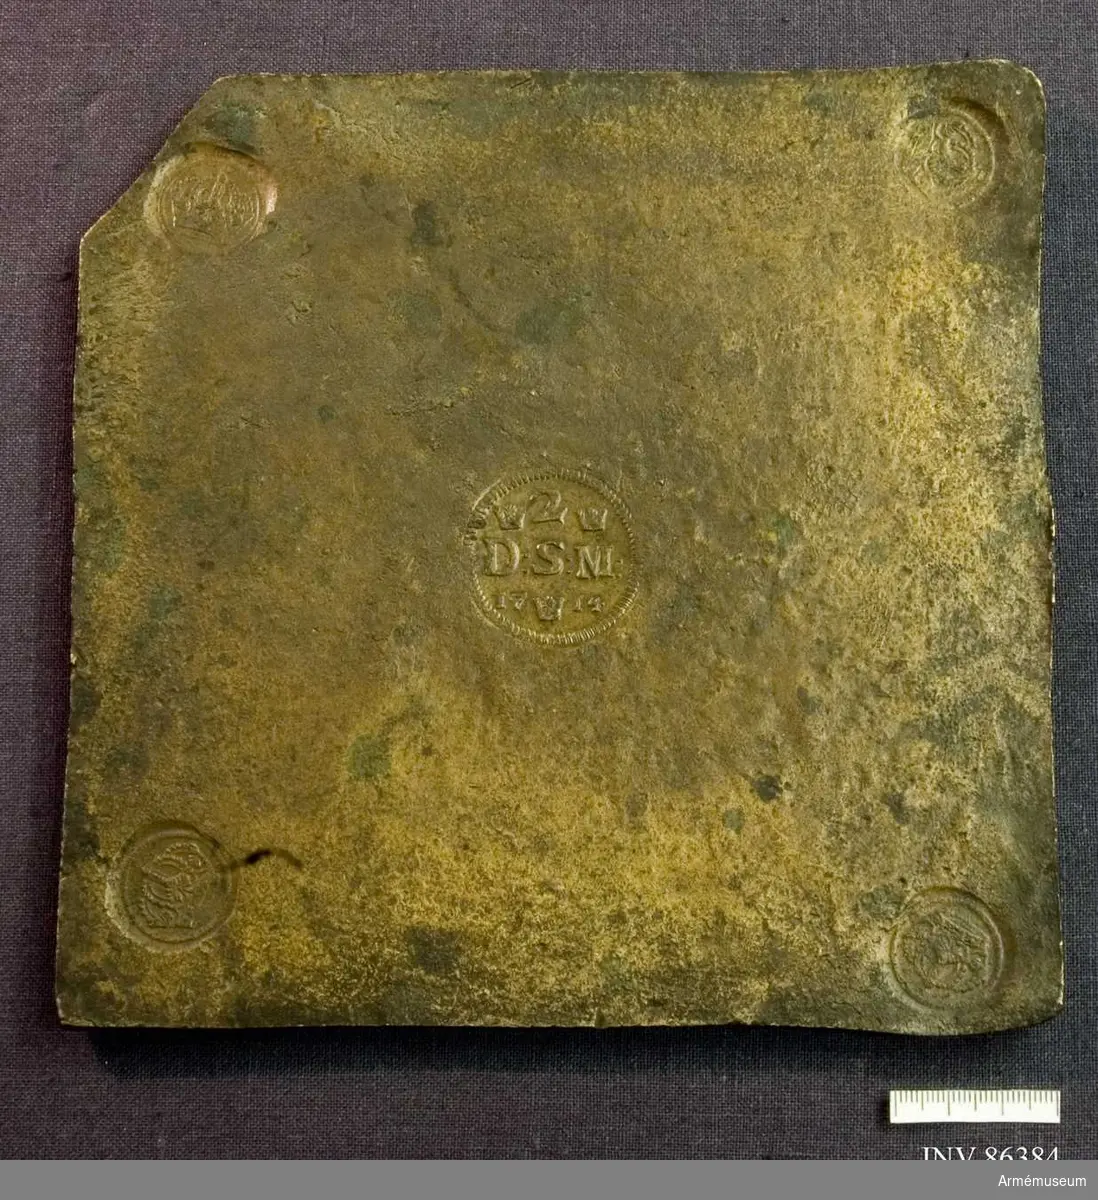 Grupp MII.

Nödmynt av metall från 1714.